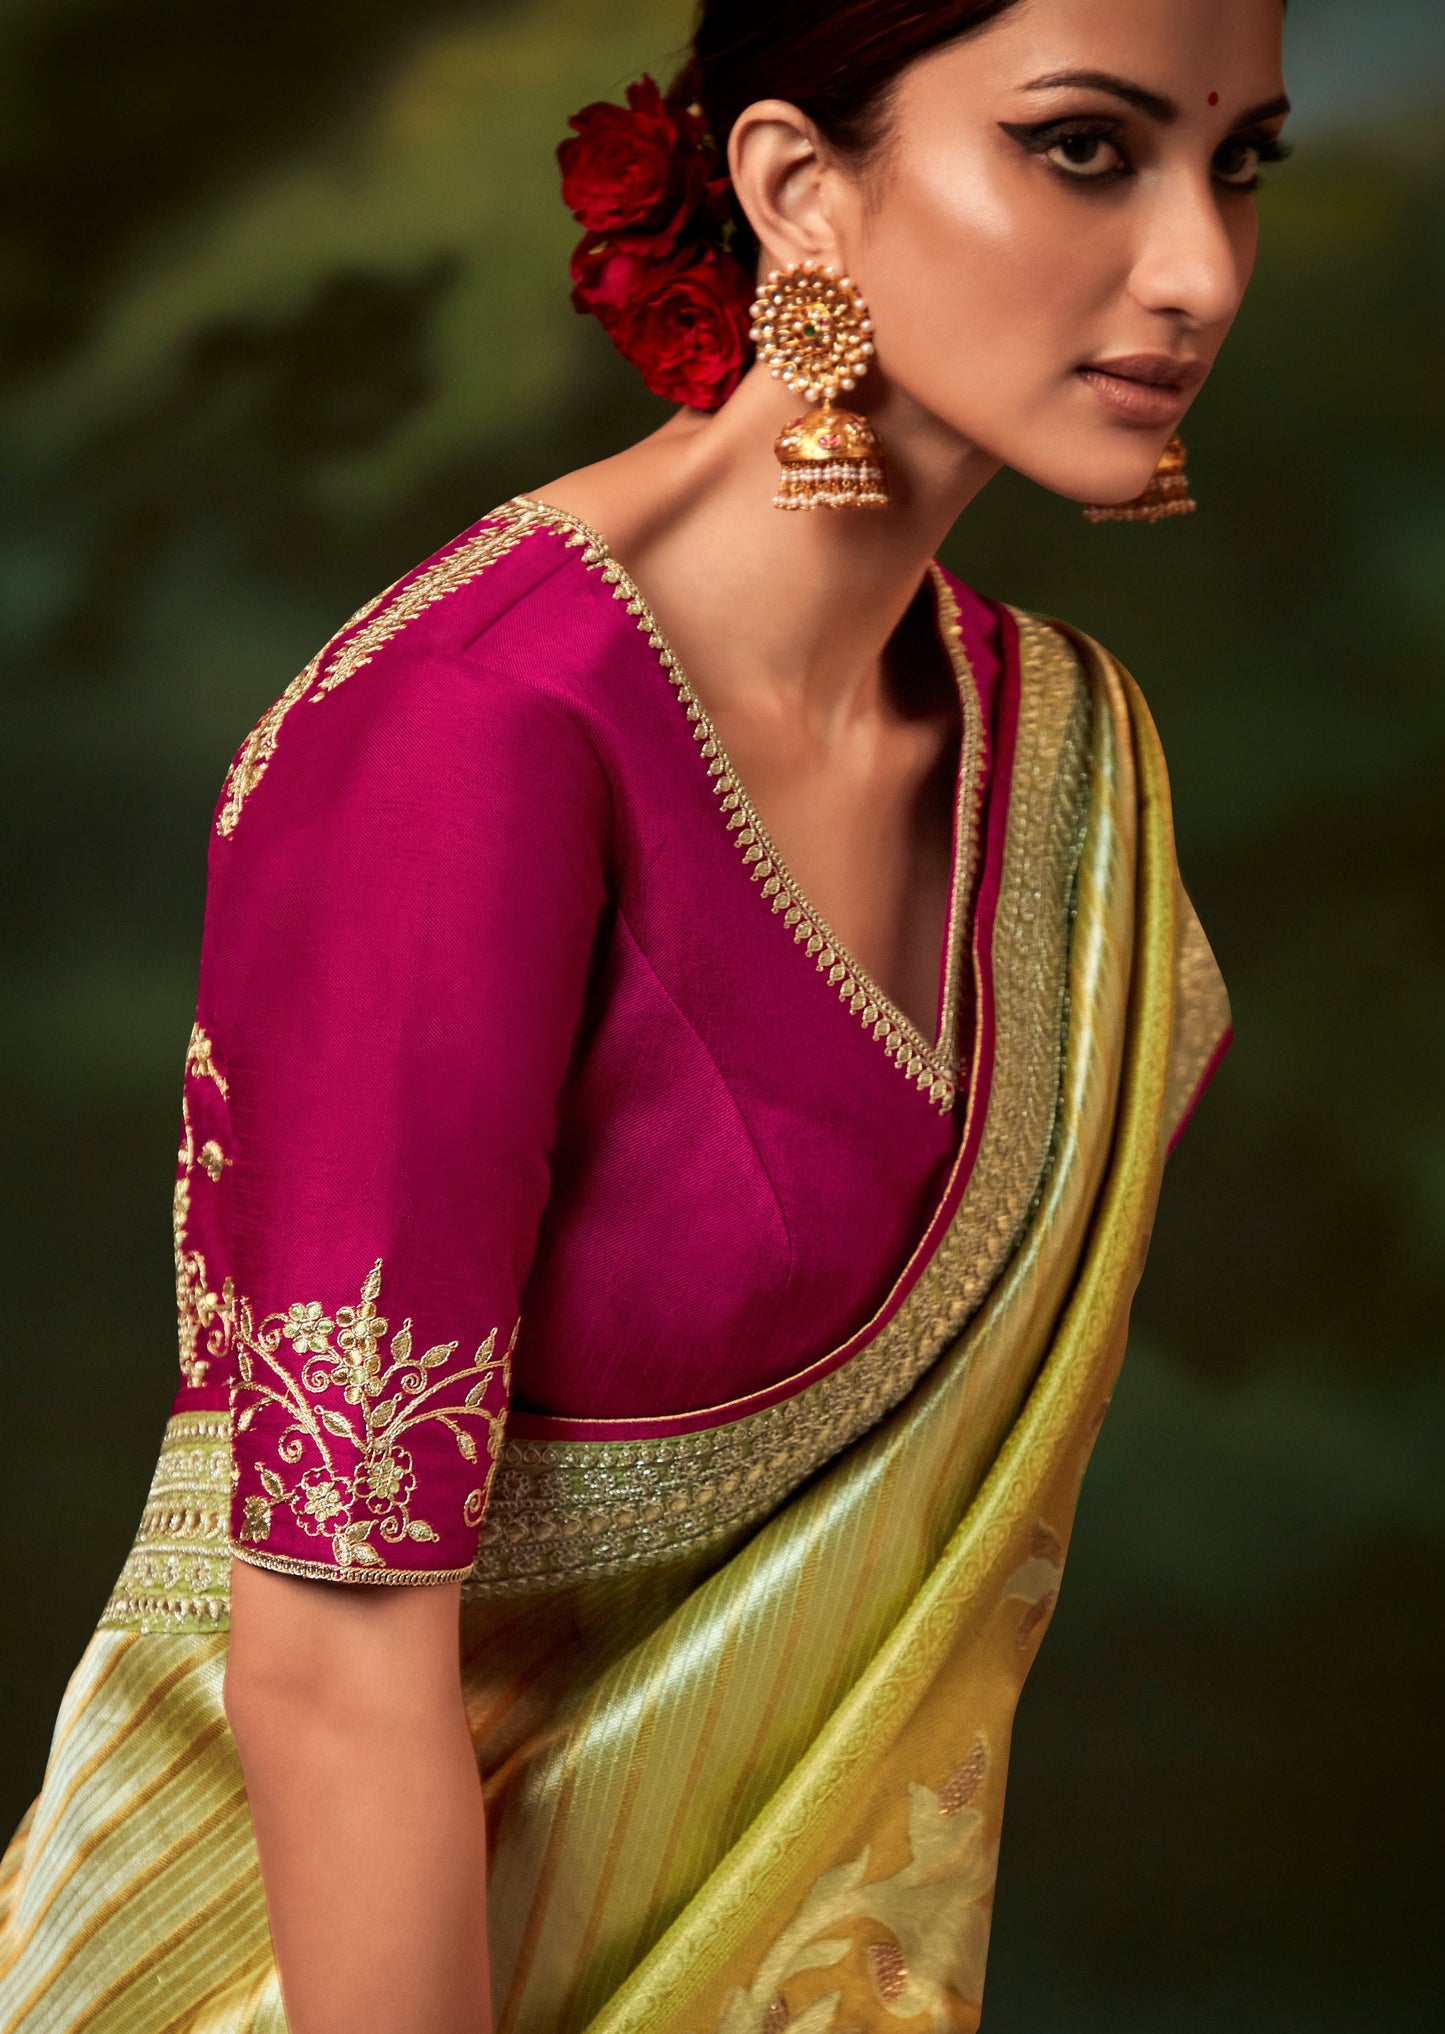 Saree blouse design online india usa. 